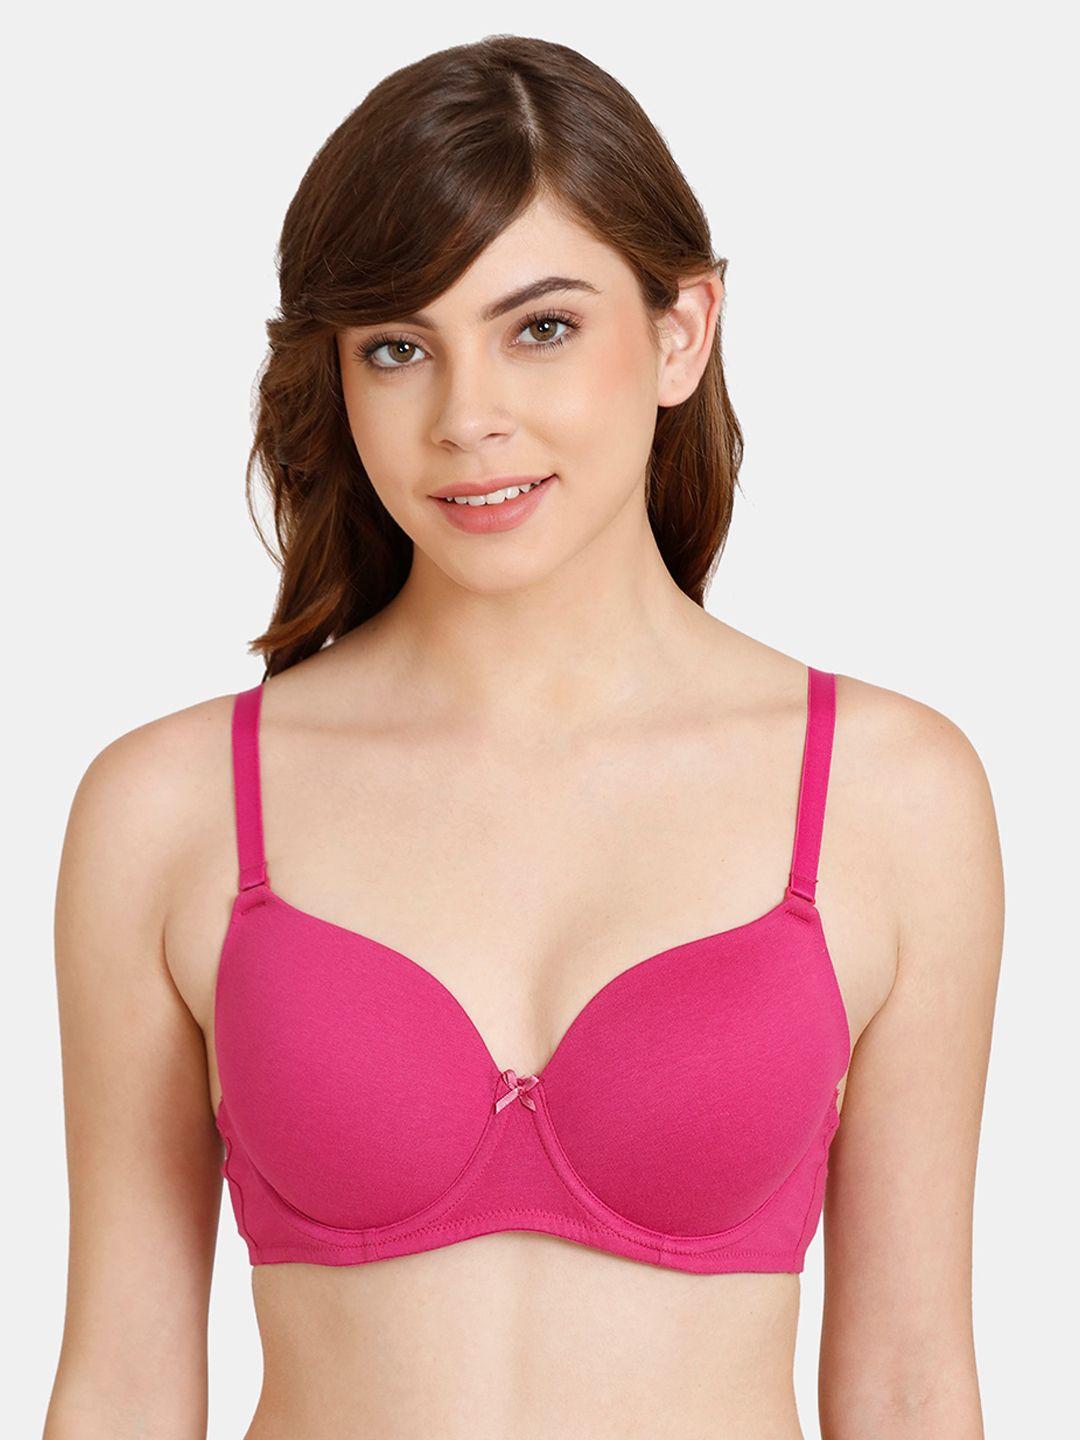 rosaline-by-zivame-pink-heavily-padded-bra